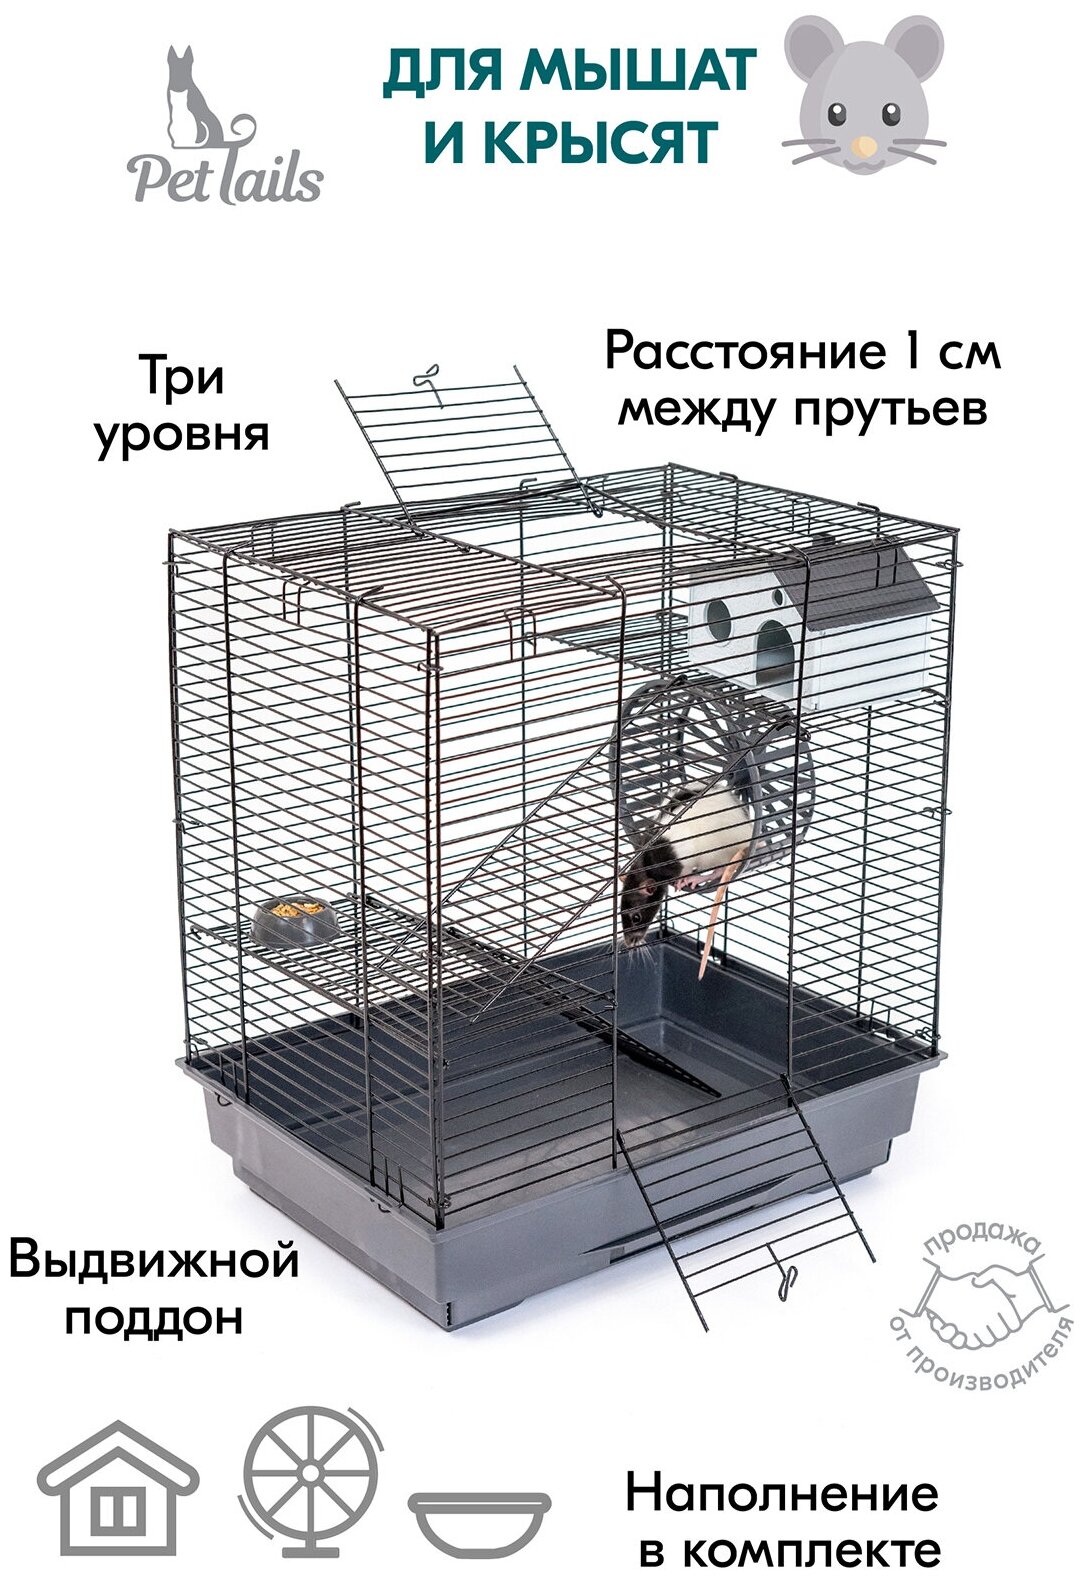 Клетка для грызунов 42х30х45см: для хомяков для крыс PetTails №3 разборная шаг прута 105мм 2 этажа (домик колесо миска)